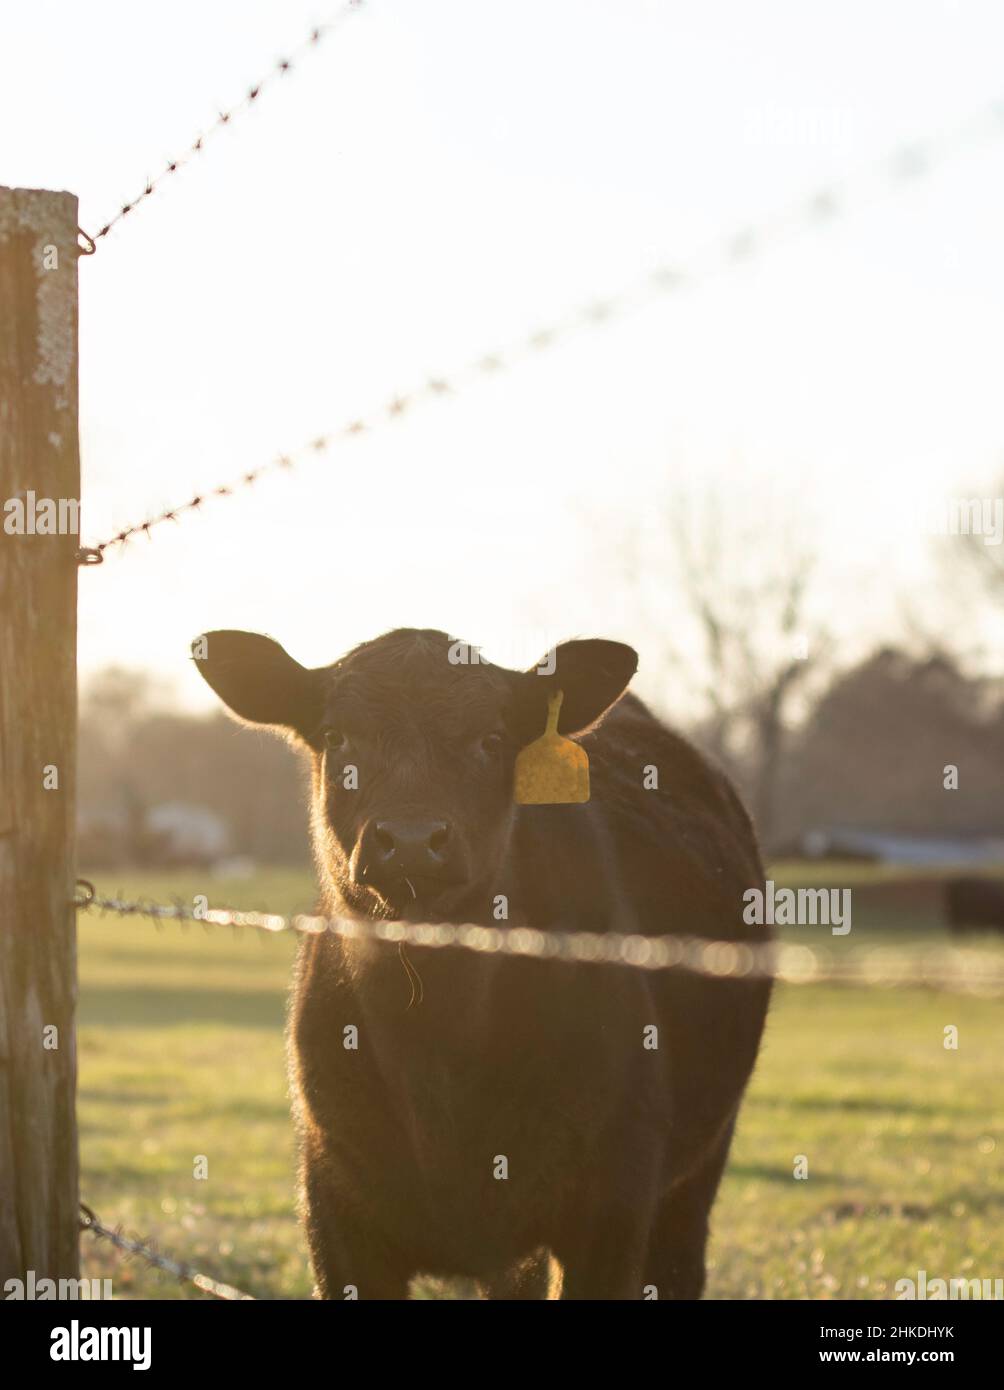 Ritratto di un vitello Angus bagnata dalla luce del sole dell'ora d'oro in piedi vicino ad una recinzione di filo spinato guardando la macchina fotografica con spazio negativo. Foto Stock